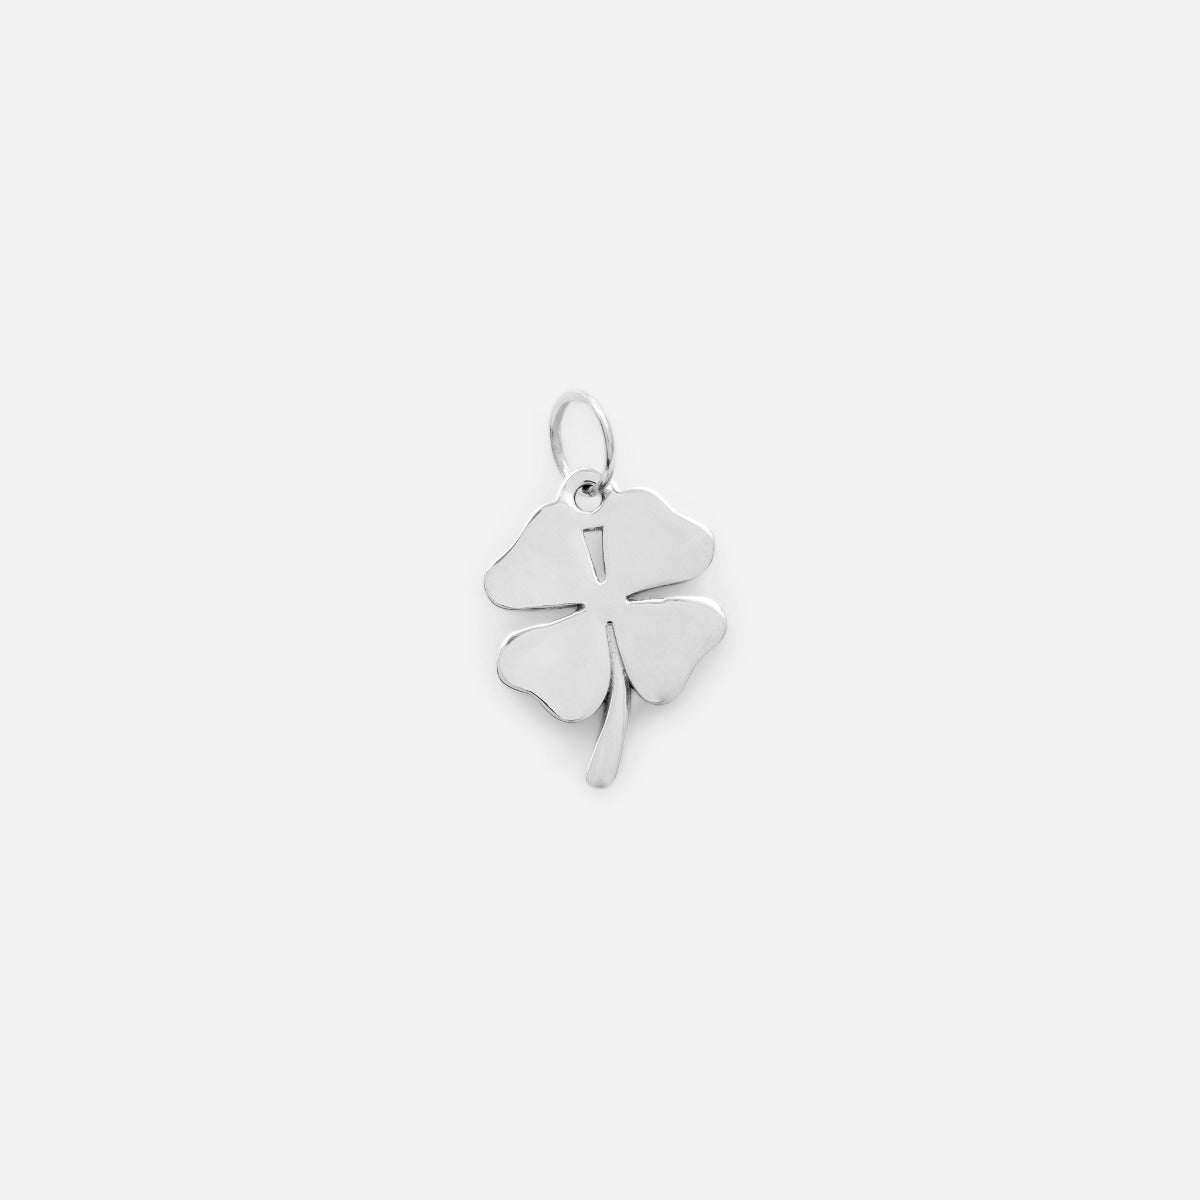 Small silver four leaf charm